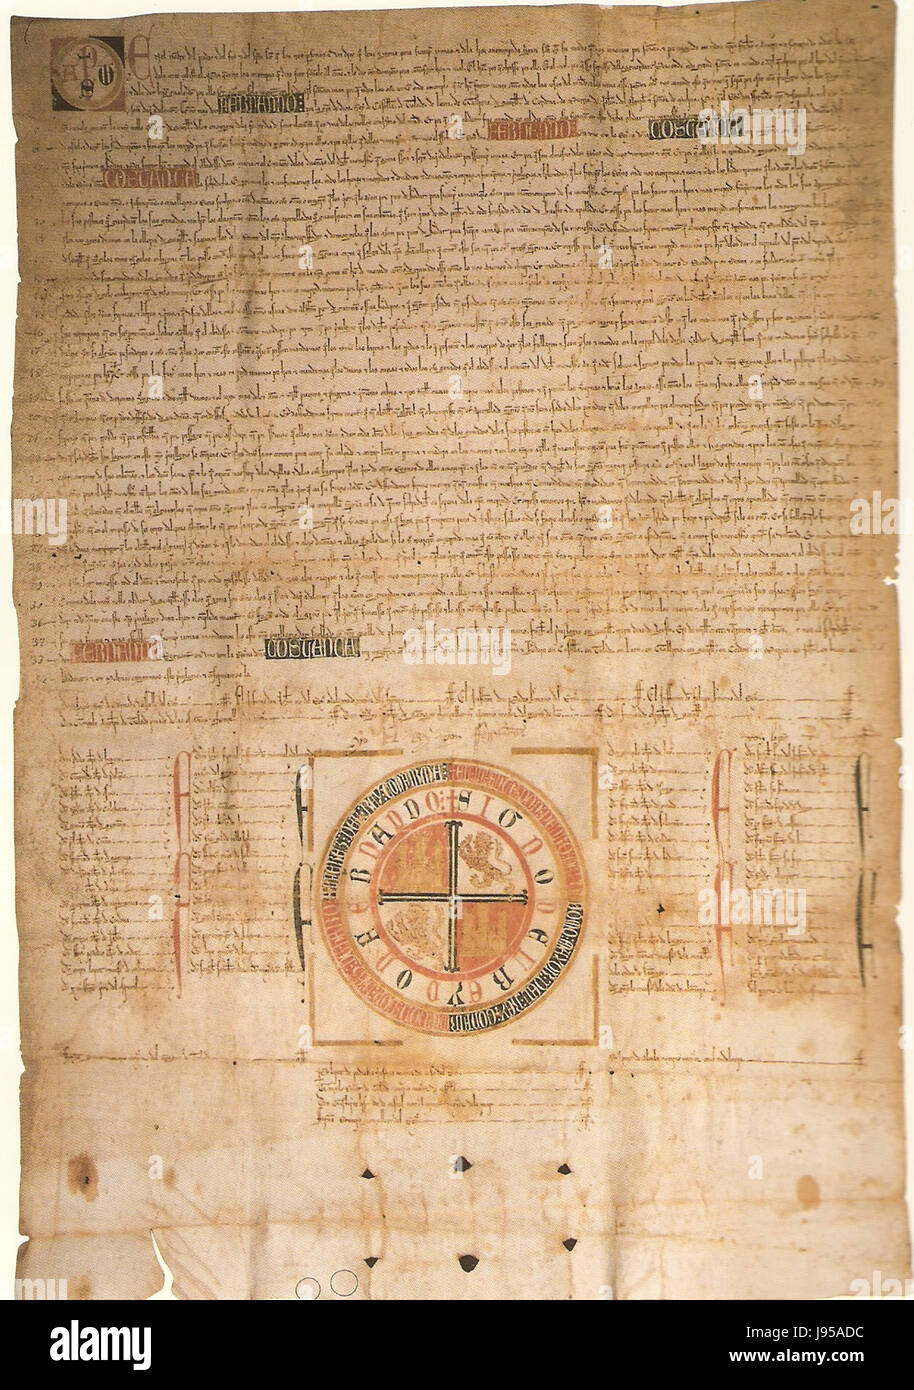 Privilegio rodado de Fernando IV de Castille confirmando los privilegios que Alfonso X y Sancho IV al concedieron Monasterio de San Clemente de Séville (138) 1310 Banque D'Images